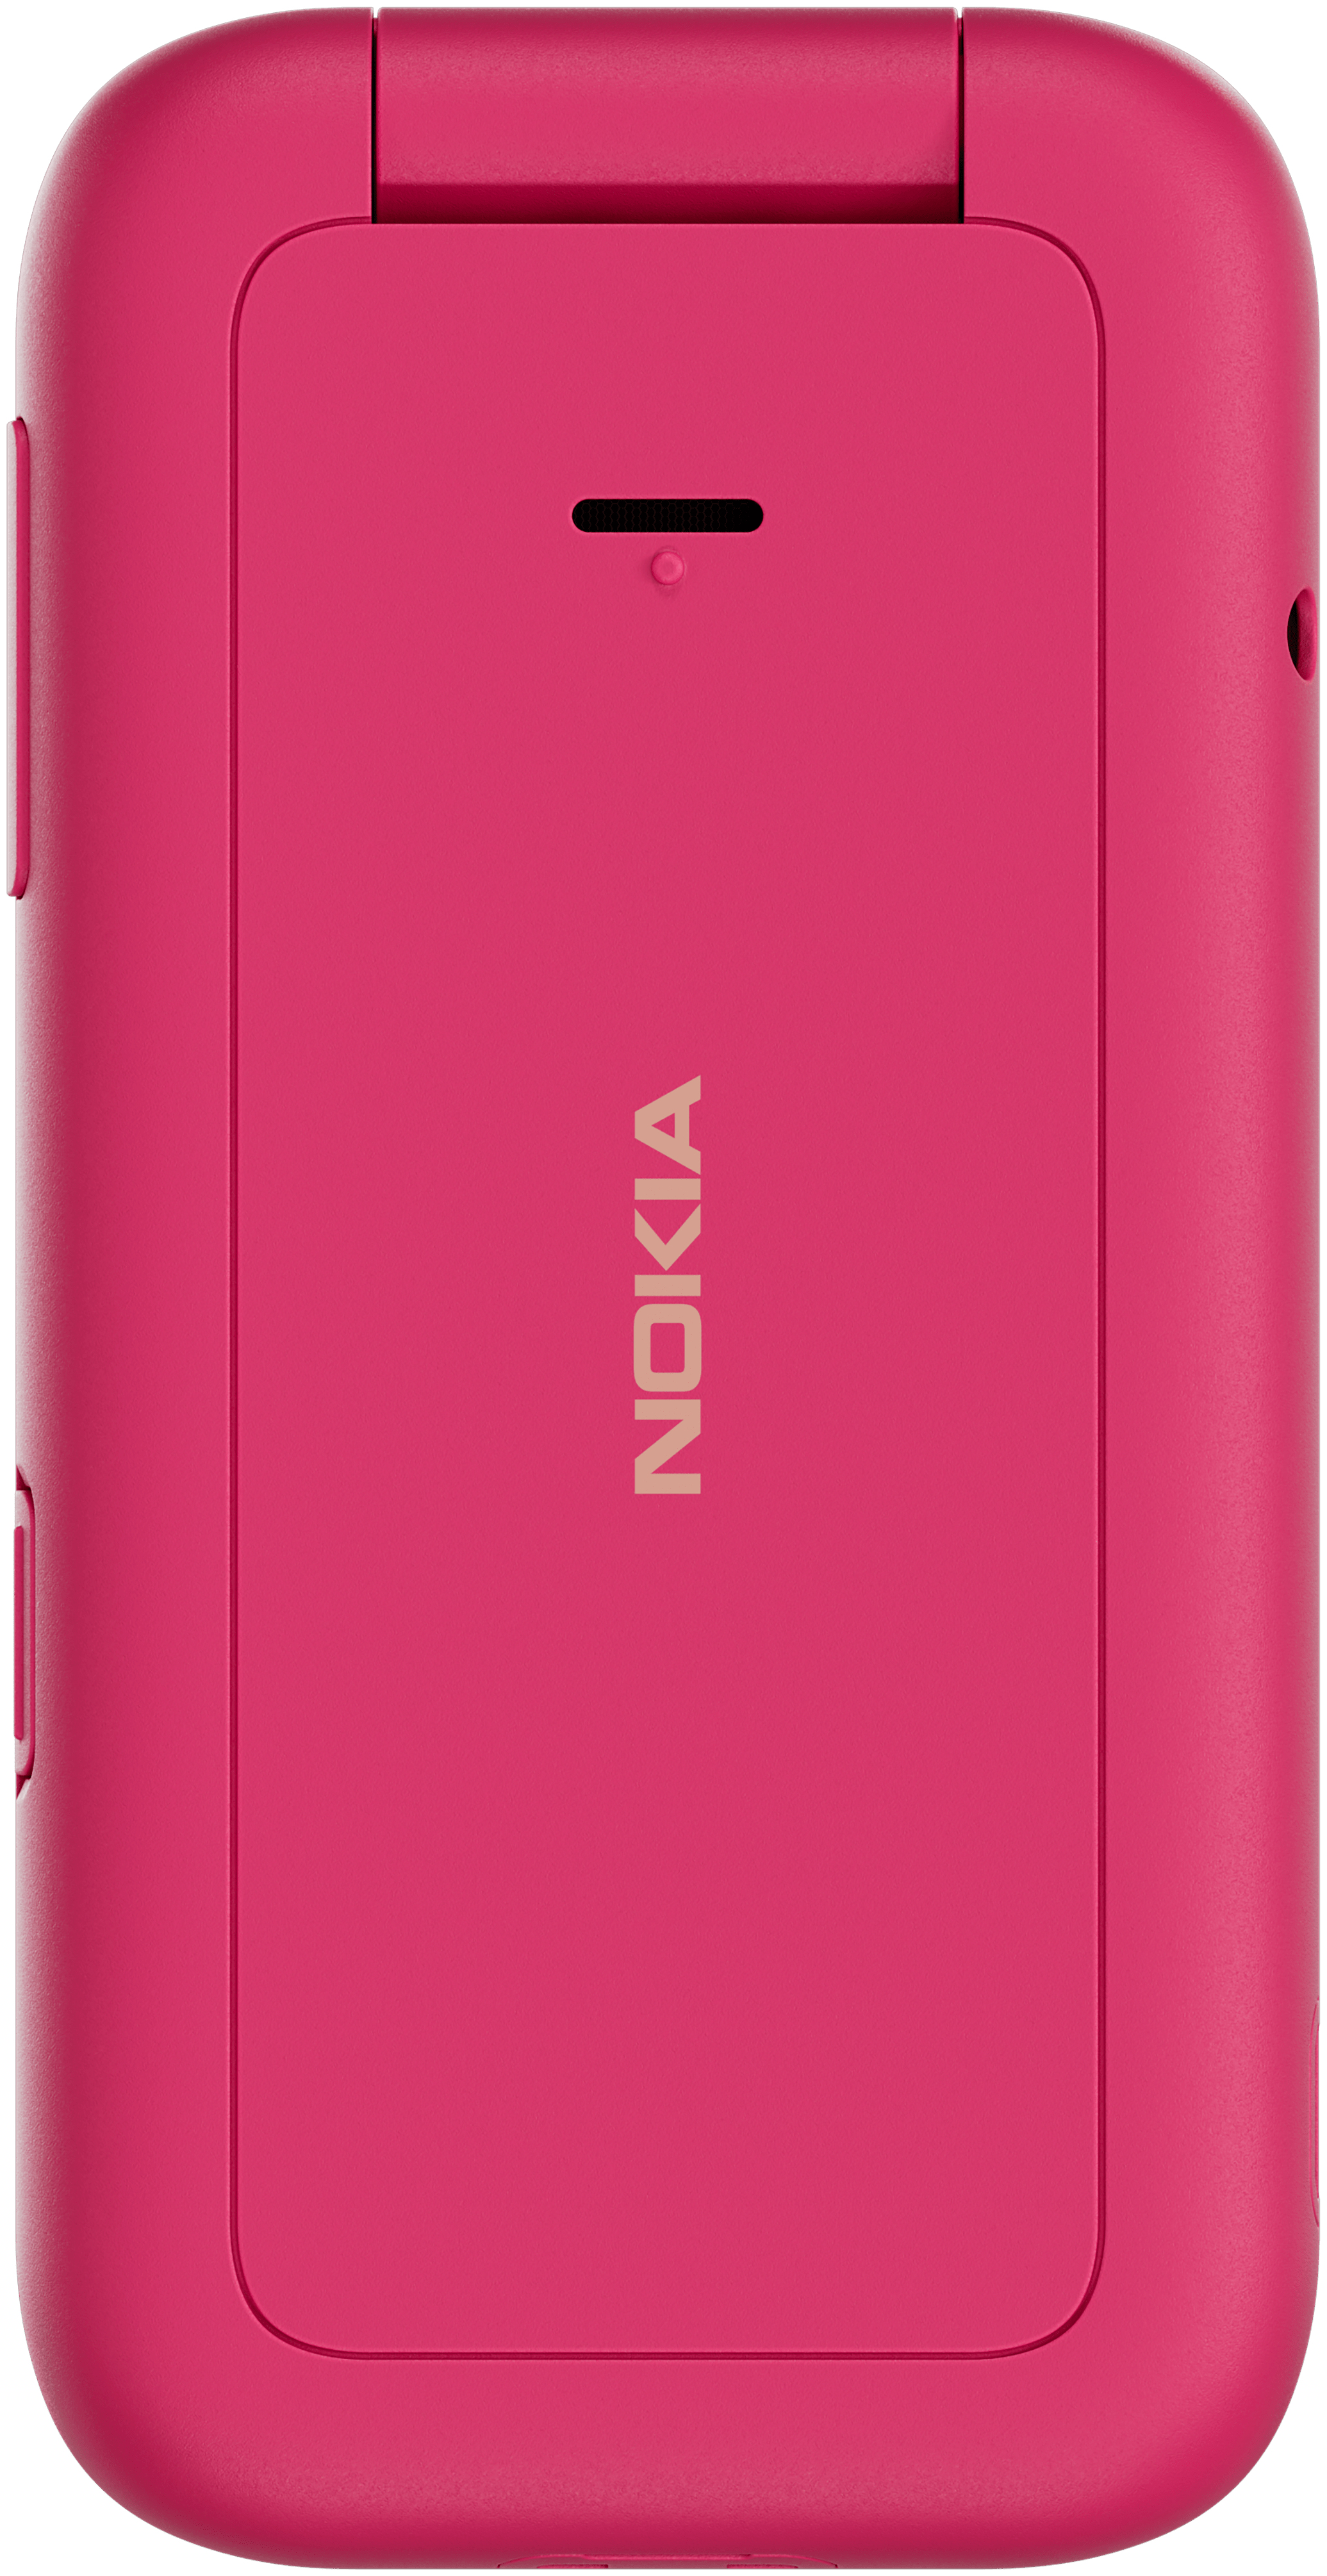 Smartphone Technomarkt Sim Flip Dual expert von (Pink) 2660 Nokia